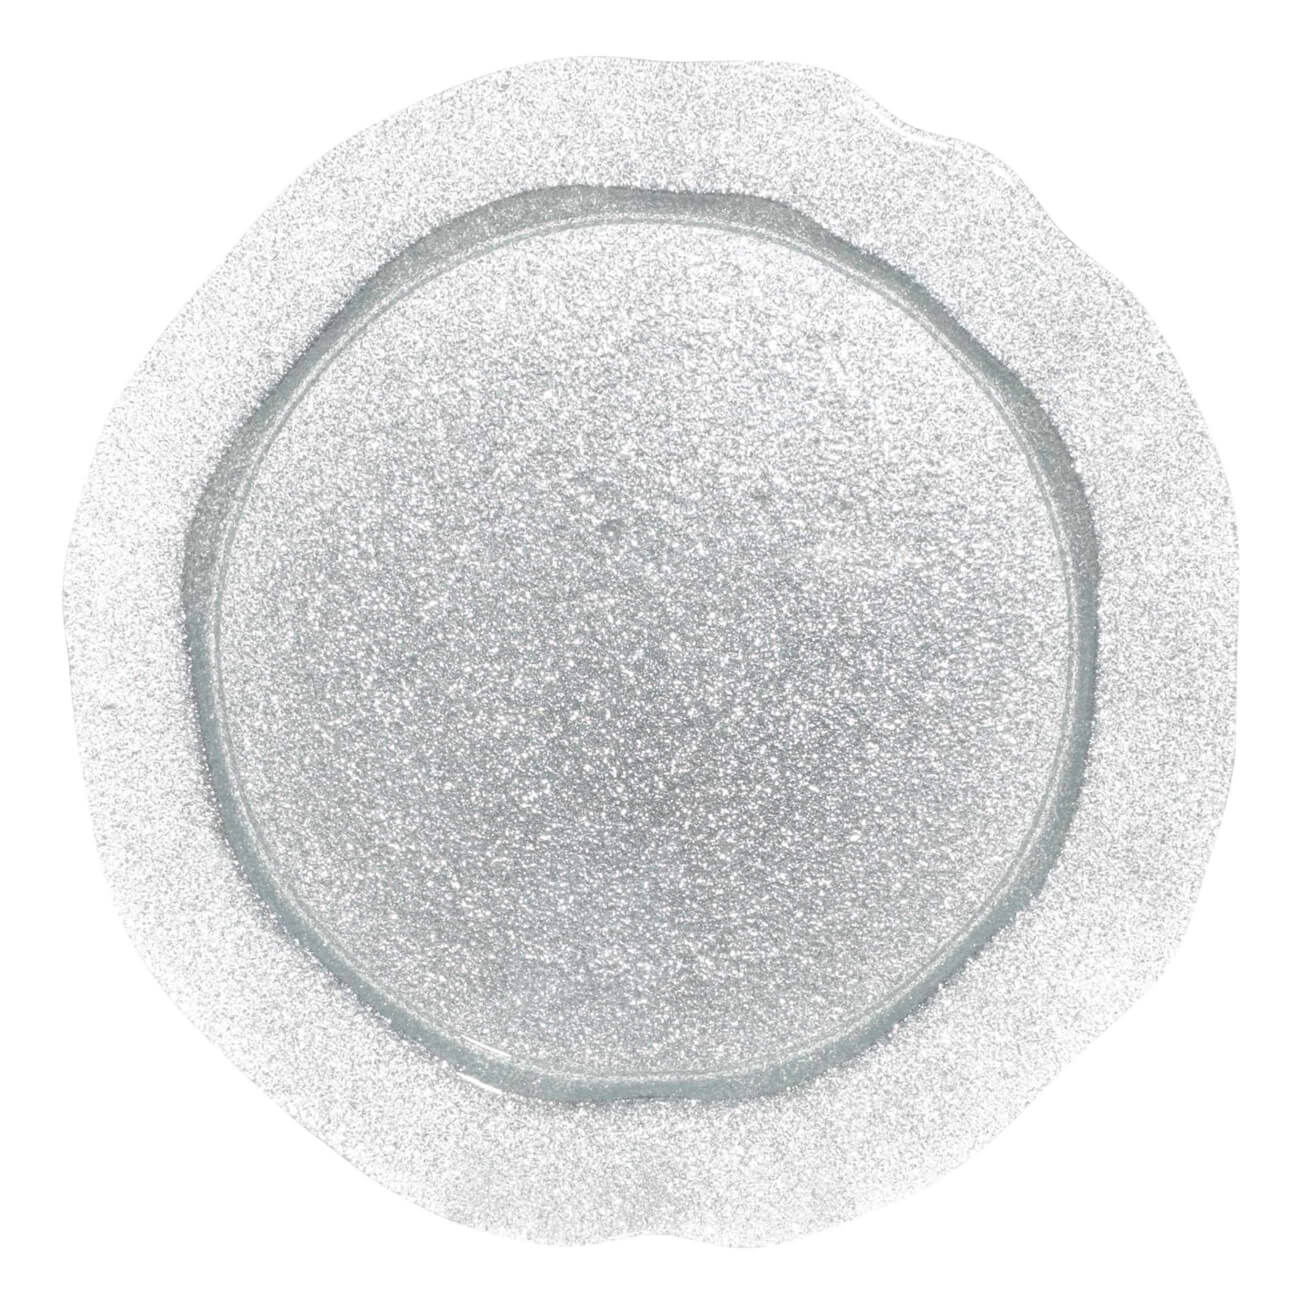 Блюдо, 32 см, стекло, серебристое, Antares блюдо стекло круглое 20 5 см aurora pasabahce 95834b